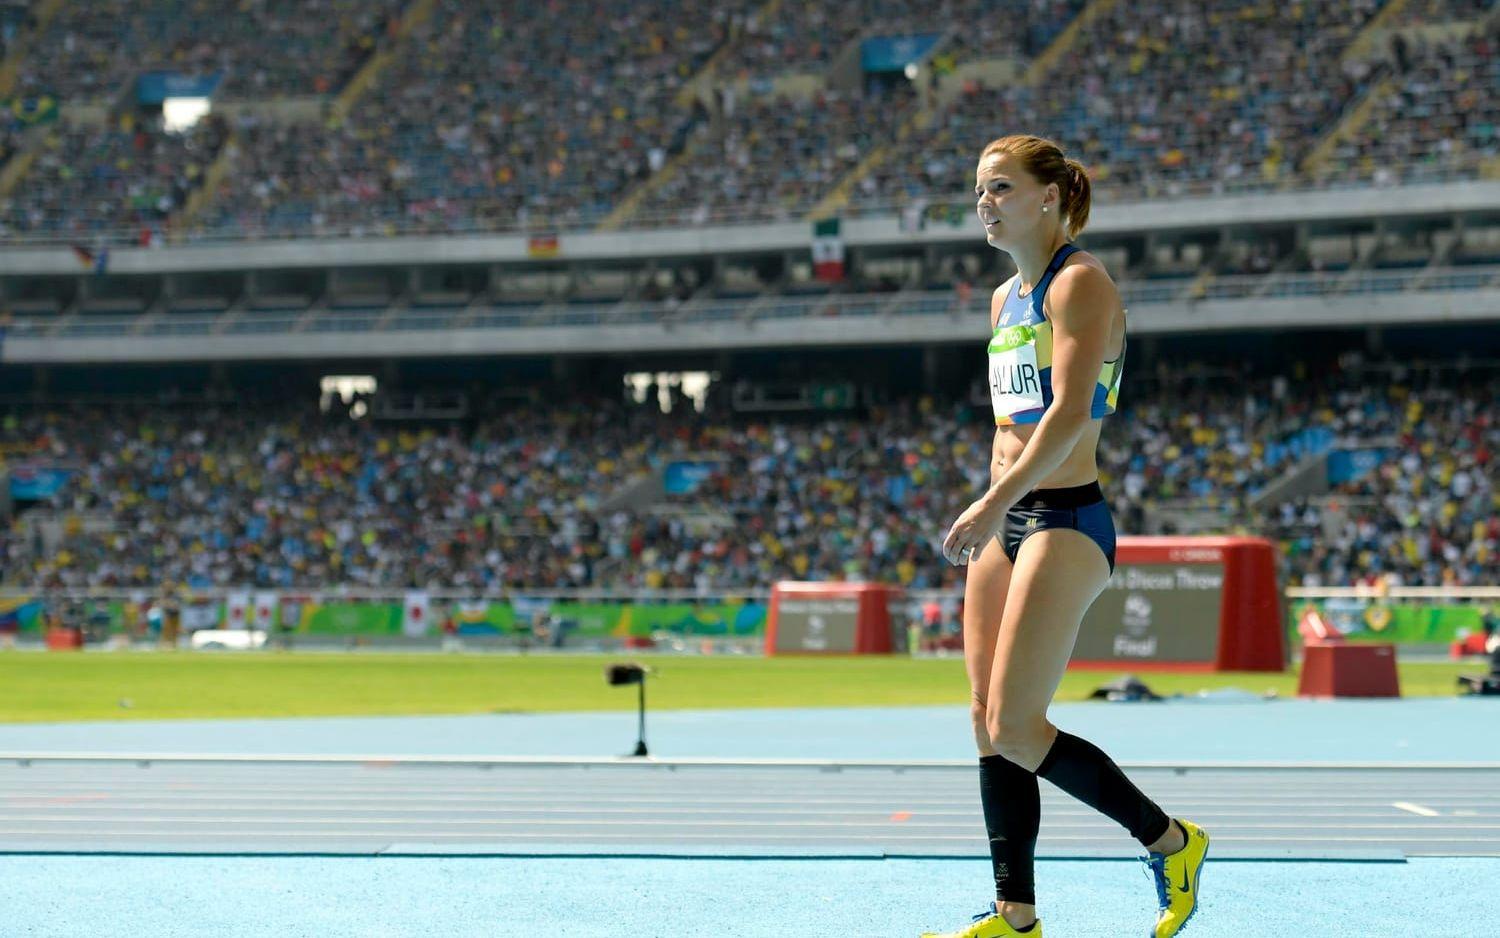 Susanna Kallur deppar efter kvalet på 100 meter häck den 16 augusti 2016 under OS i Rio de Janeiro. Bild: Joel Marklund, Bildbyrån